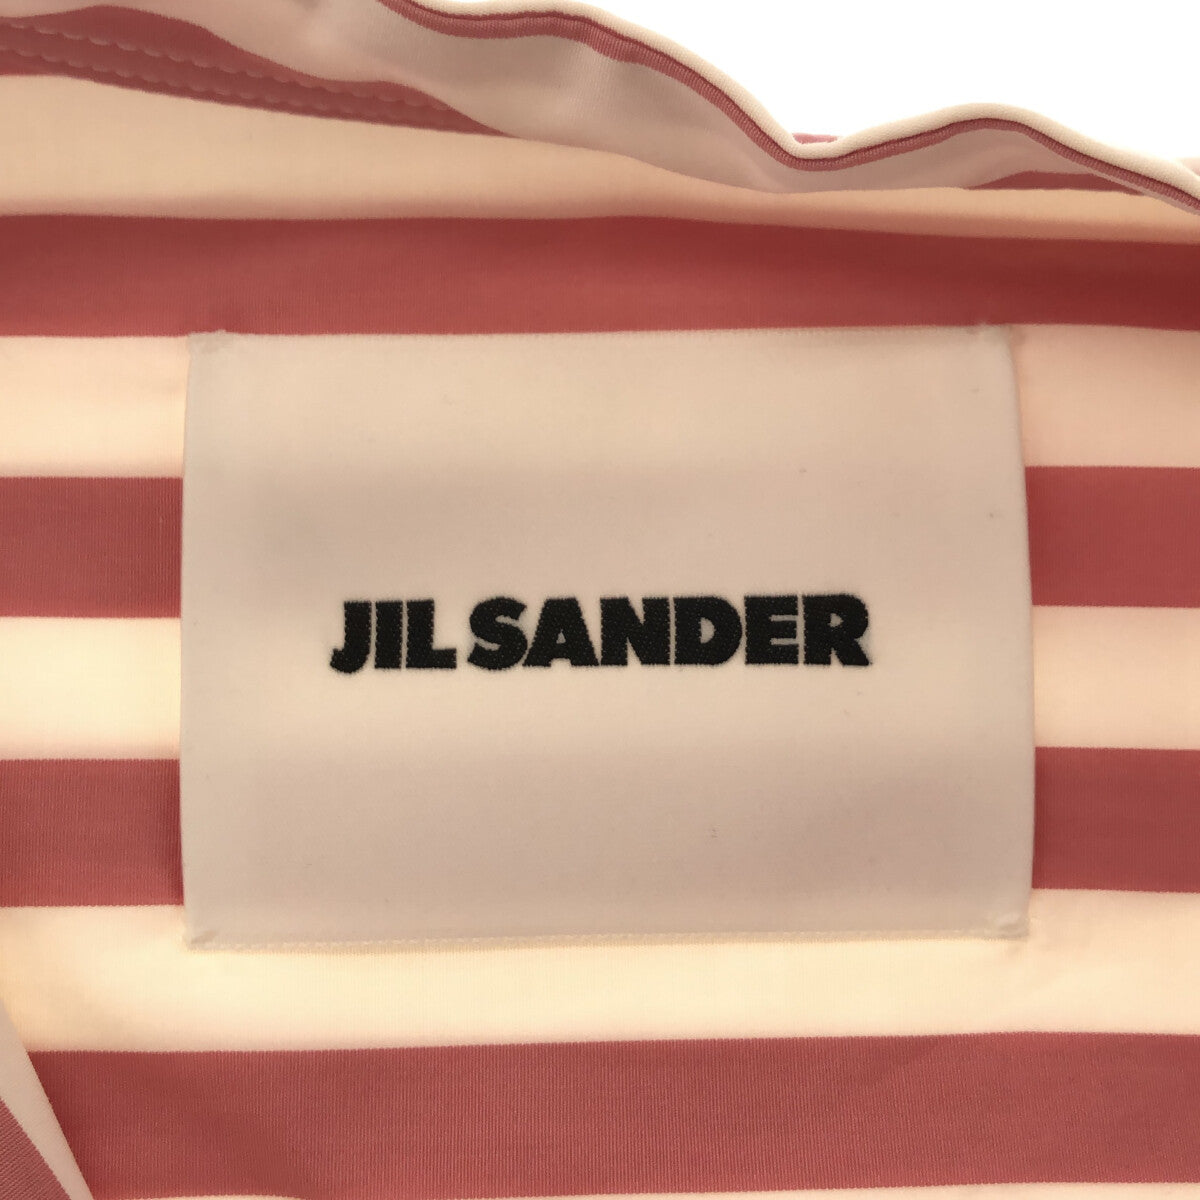 【新品】  JIL SANDER / ジルサンダー | コットン ストライプ バックギャザー バンドカラー ロング シャツワンピース | 34 | ピンク/ホワイト | レディース